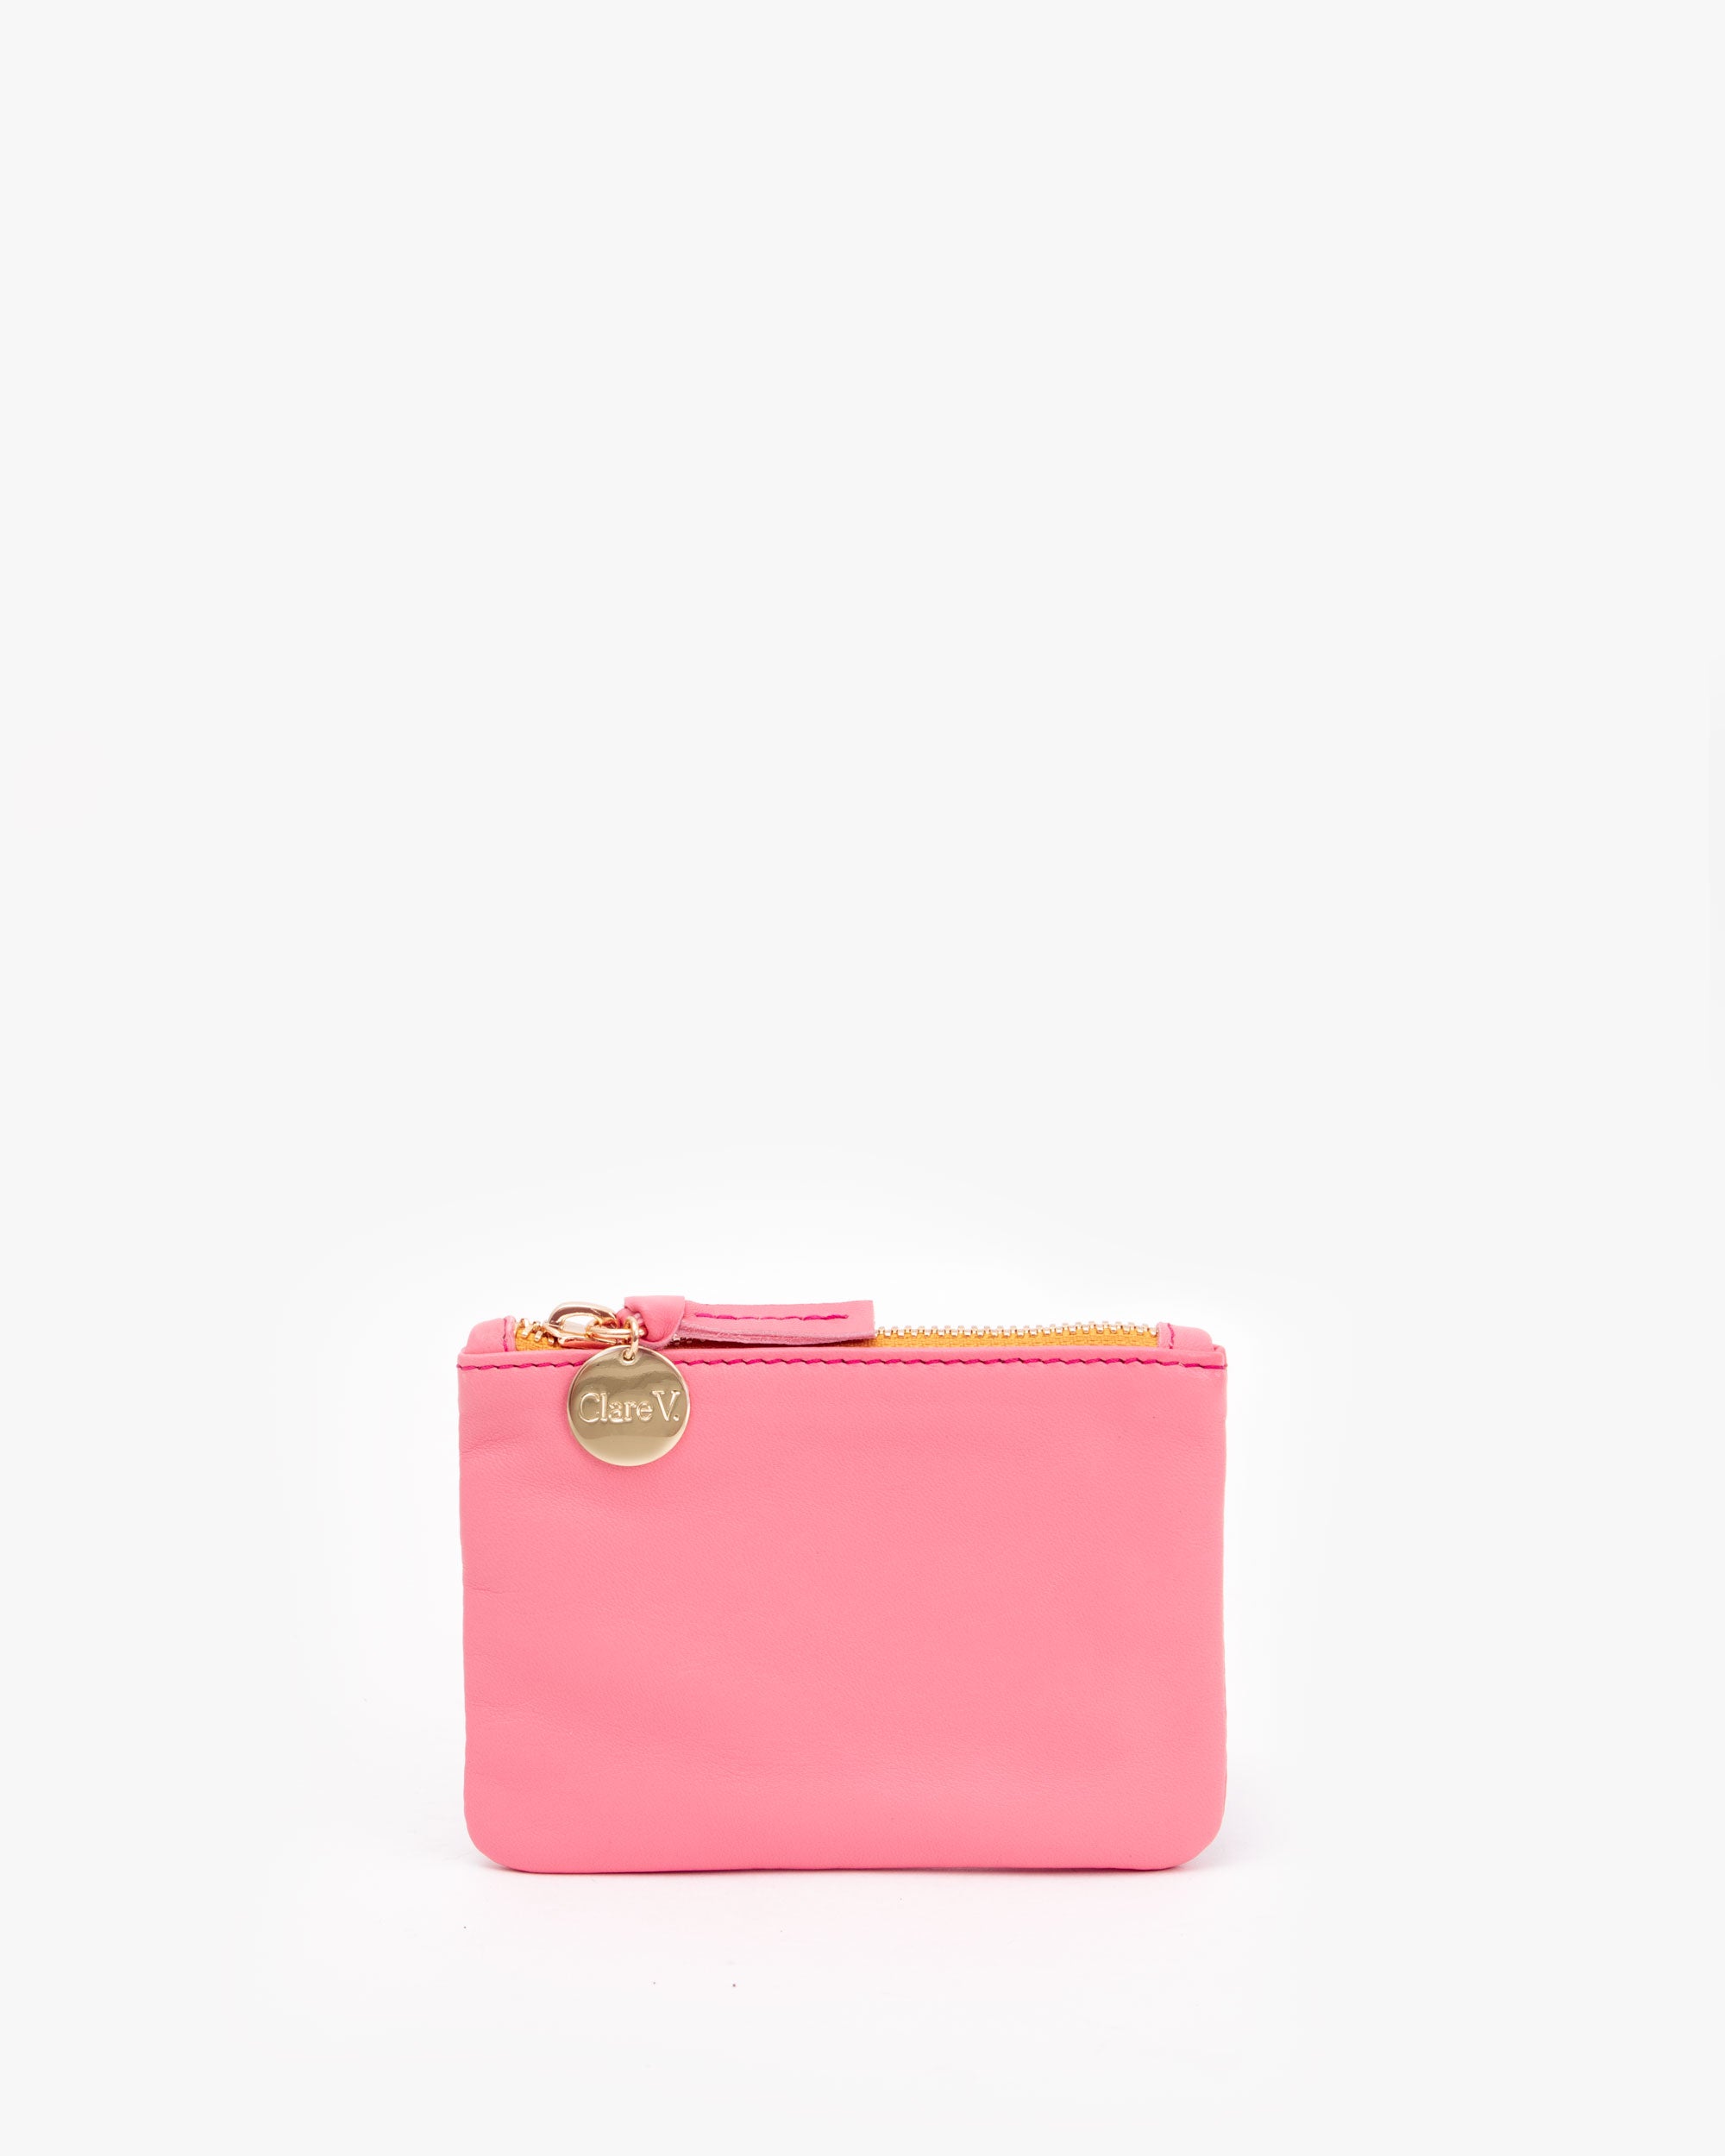 clare v pink bag